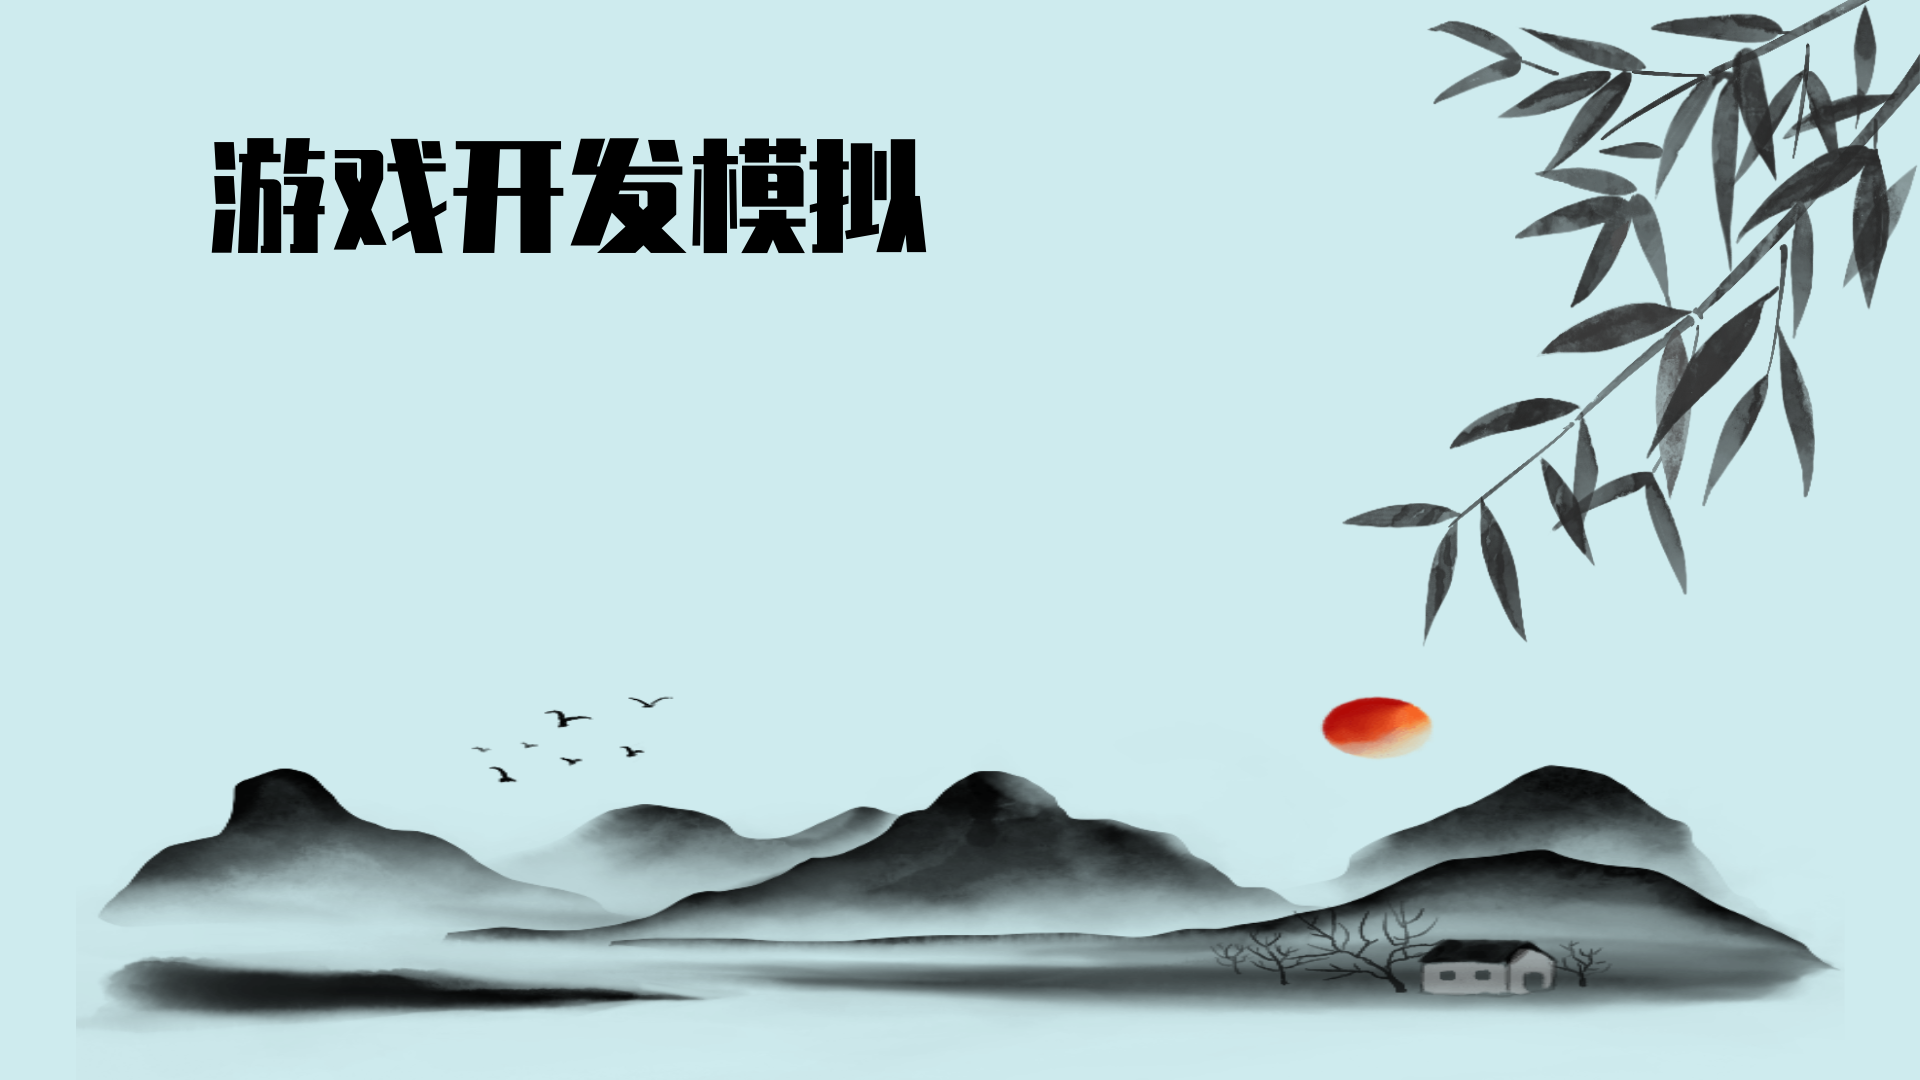 Banner of កម្មវិធីត្រាប់តាមការផ្សាយពាណិជ្ជកម្ម (សាកល្បង) 